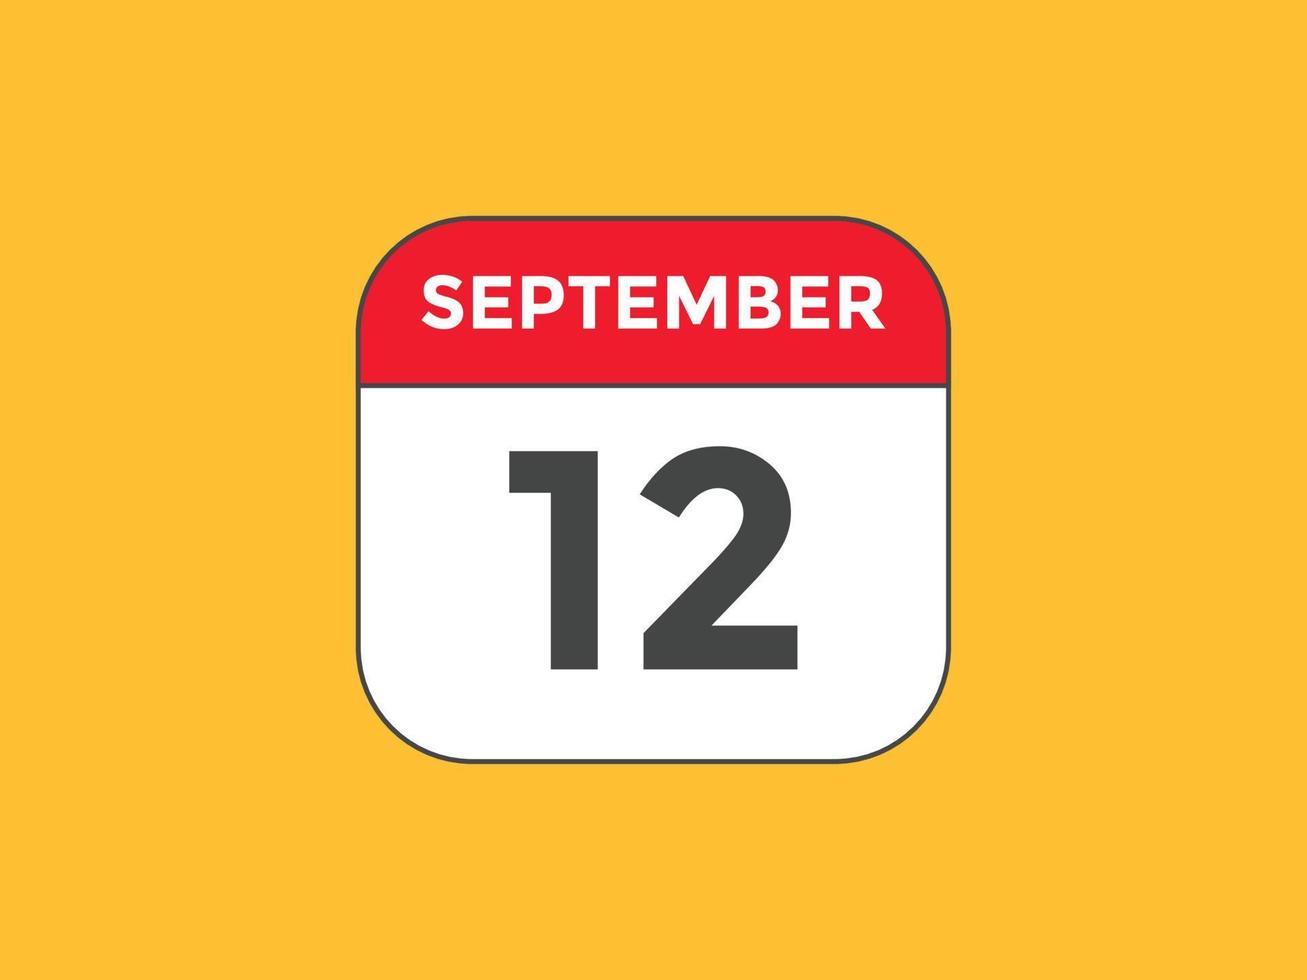 rappel du calendrier du 12 septembre. Modèle d'icône de calendrier quotidien du 12 septembre. modèle de conception d'icône calendrier 12 septembre. illustration vectorielle vecteur